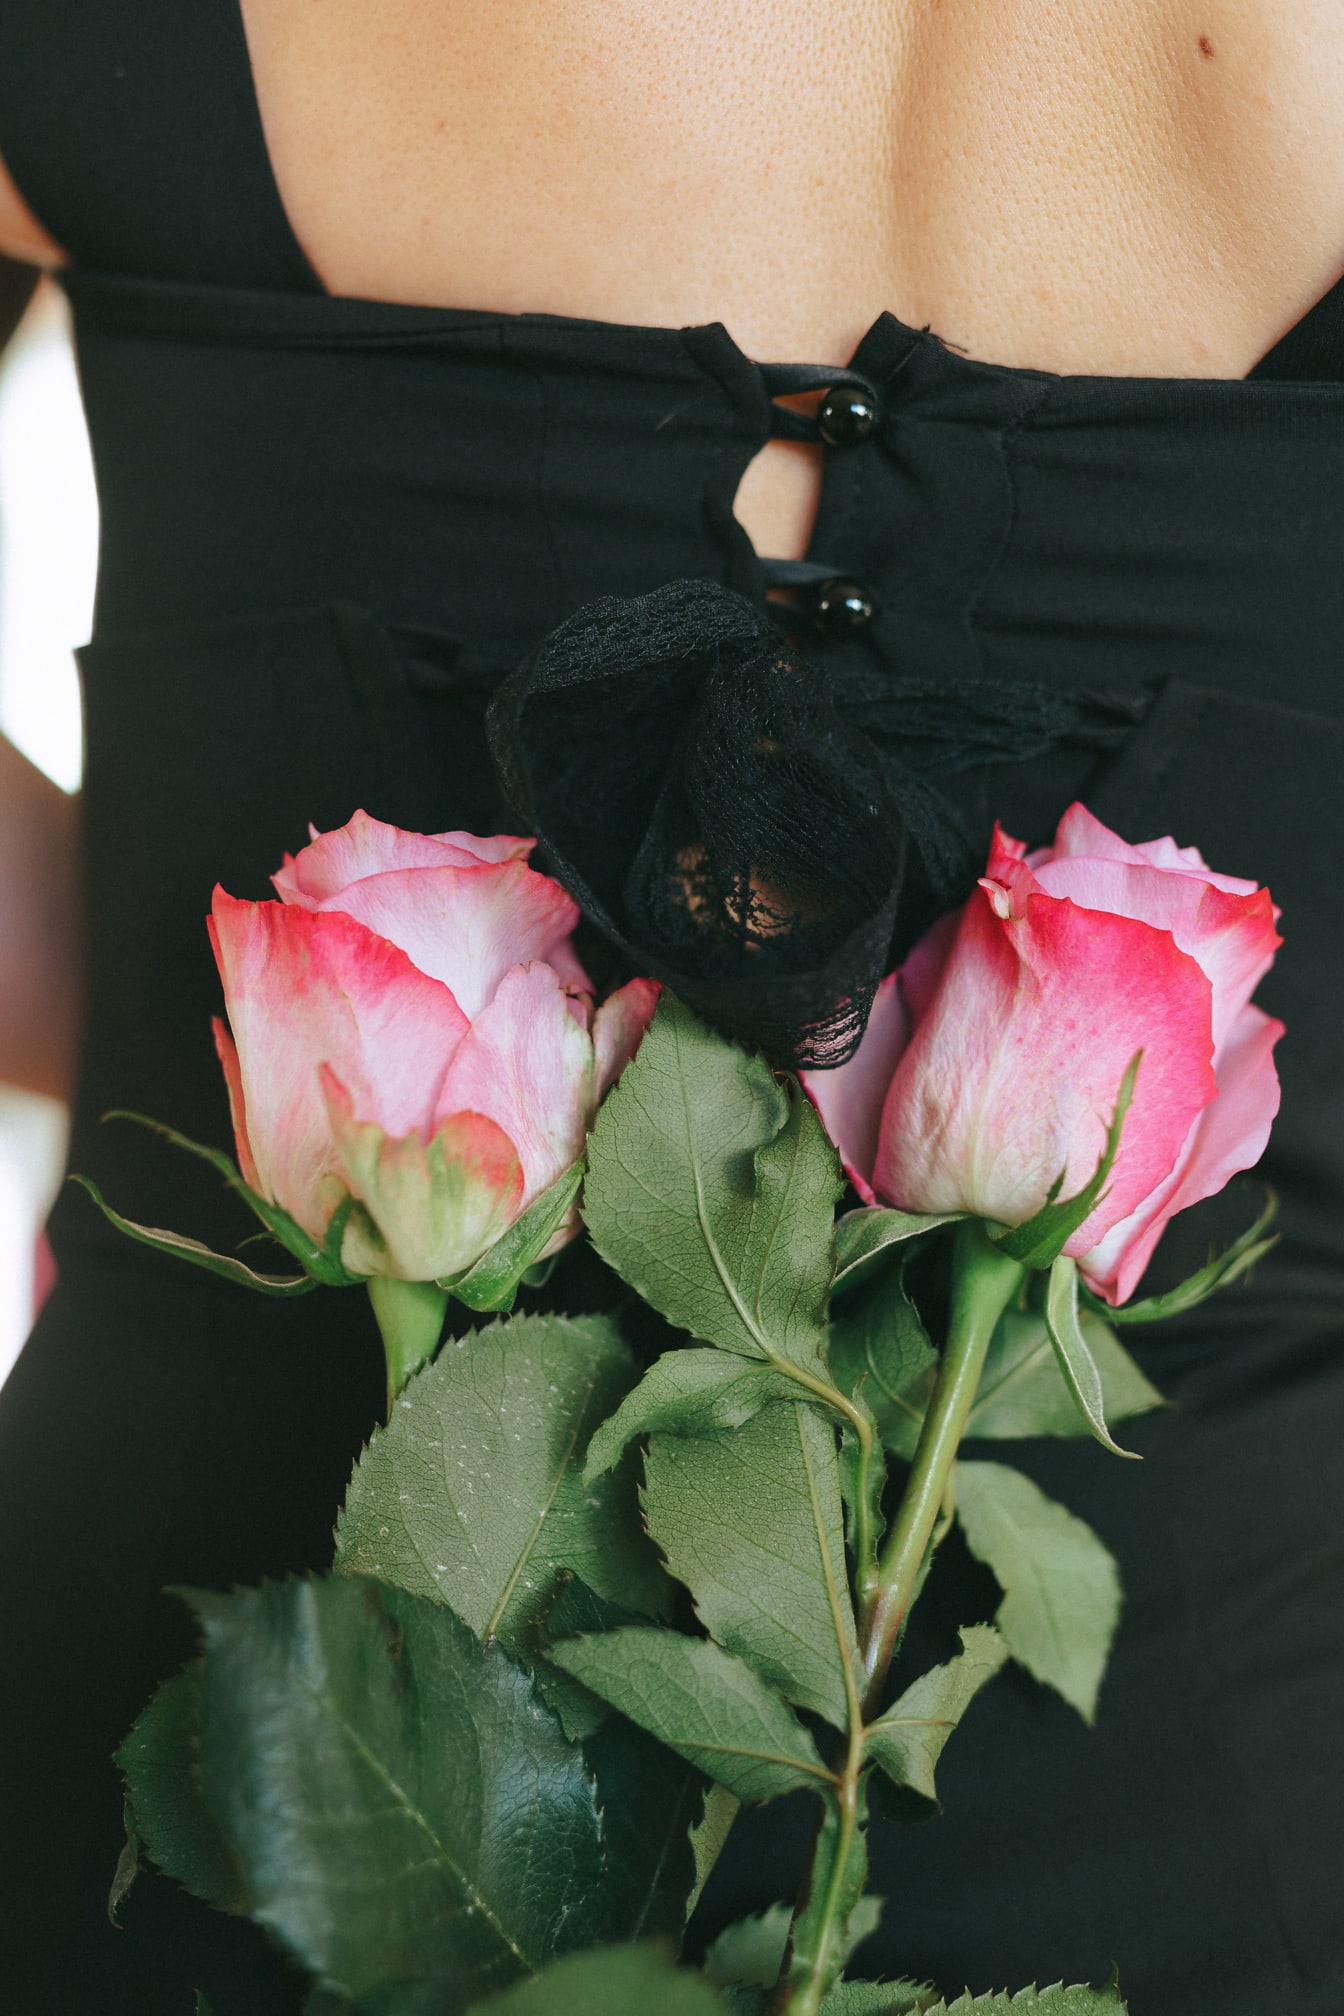 분홍색 장미 꽃다발과 함께 검은 드레스를 입은 여성의 뒷모습